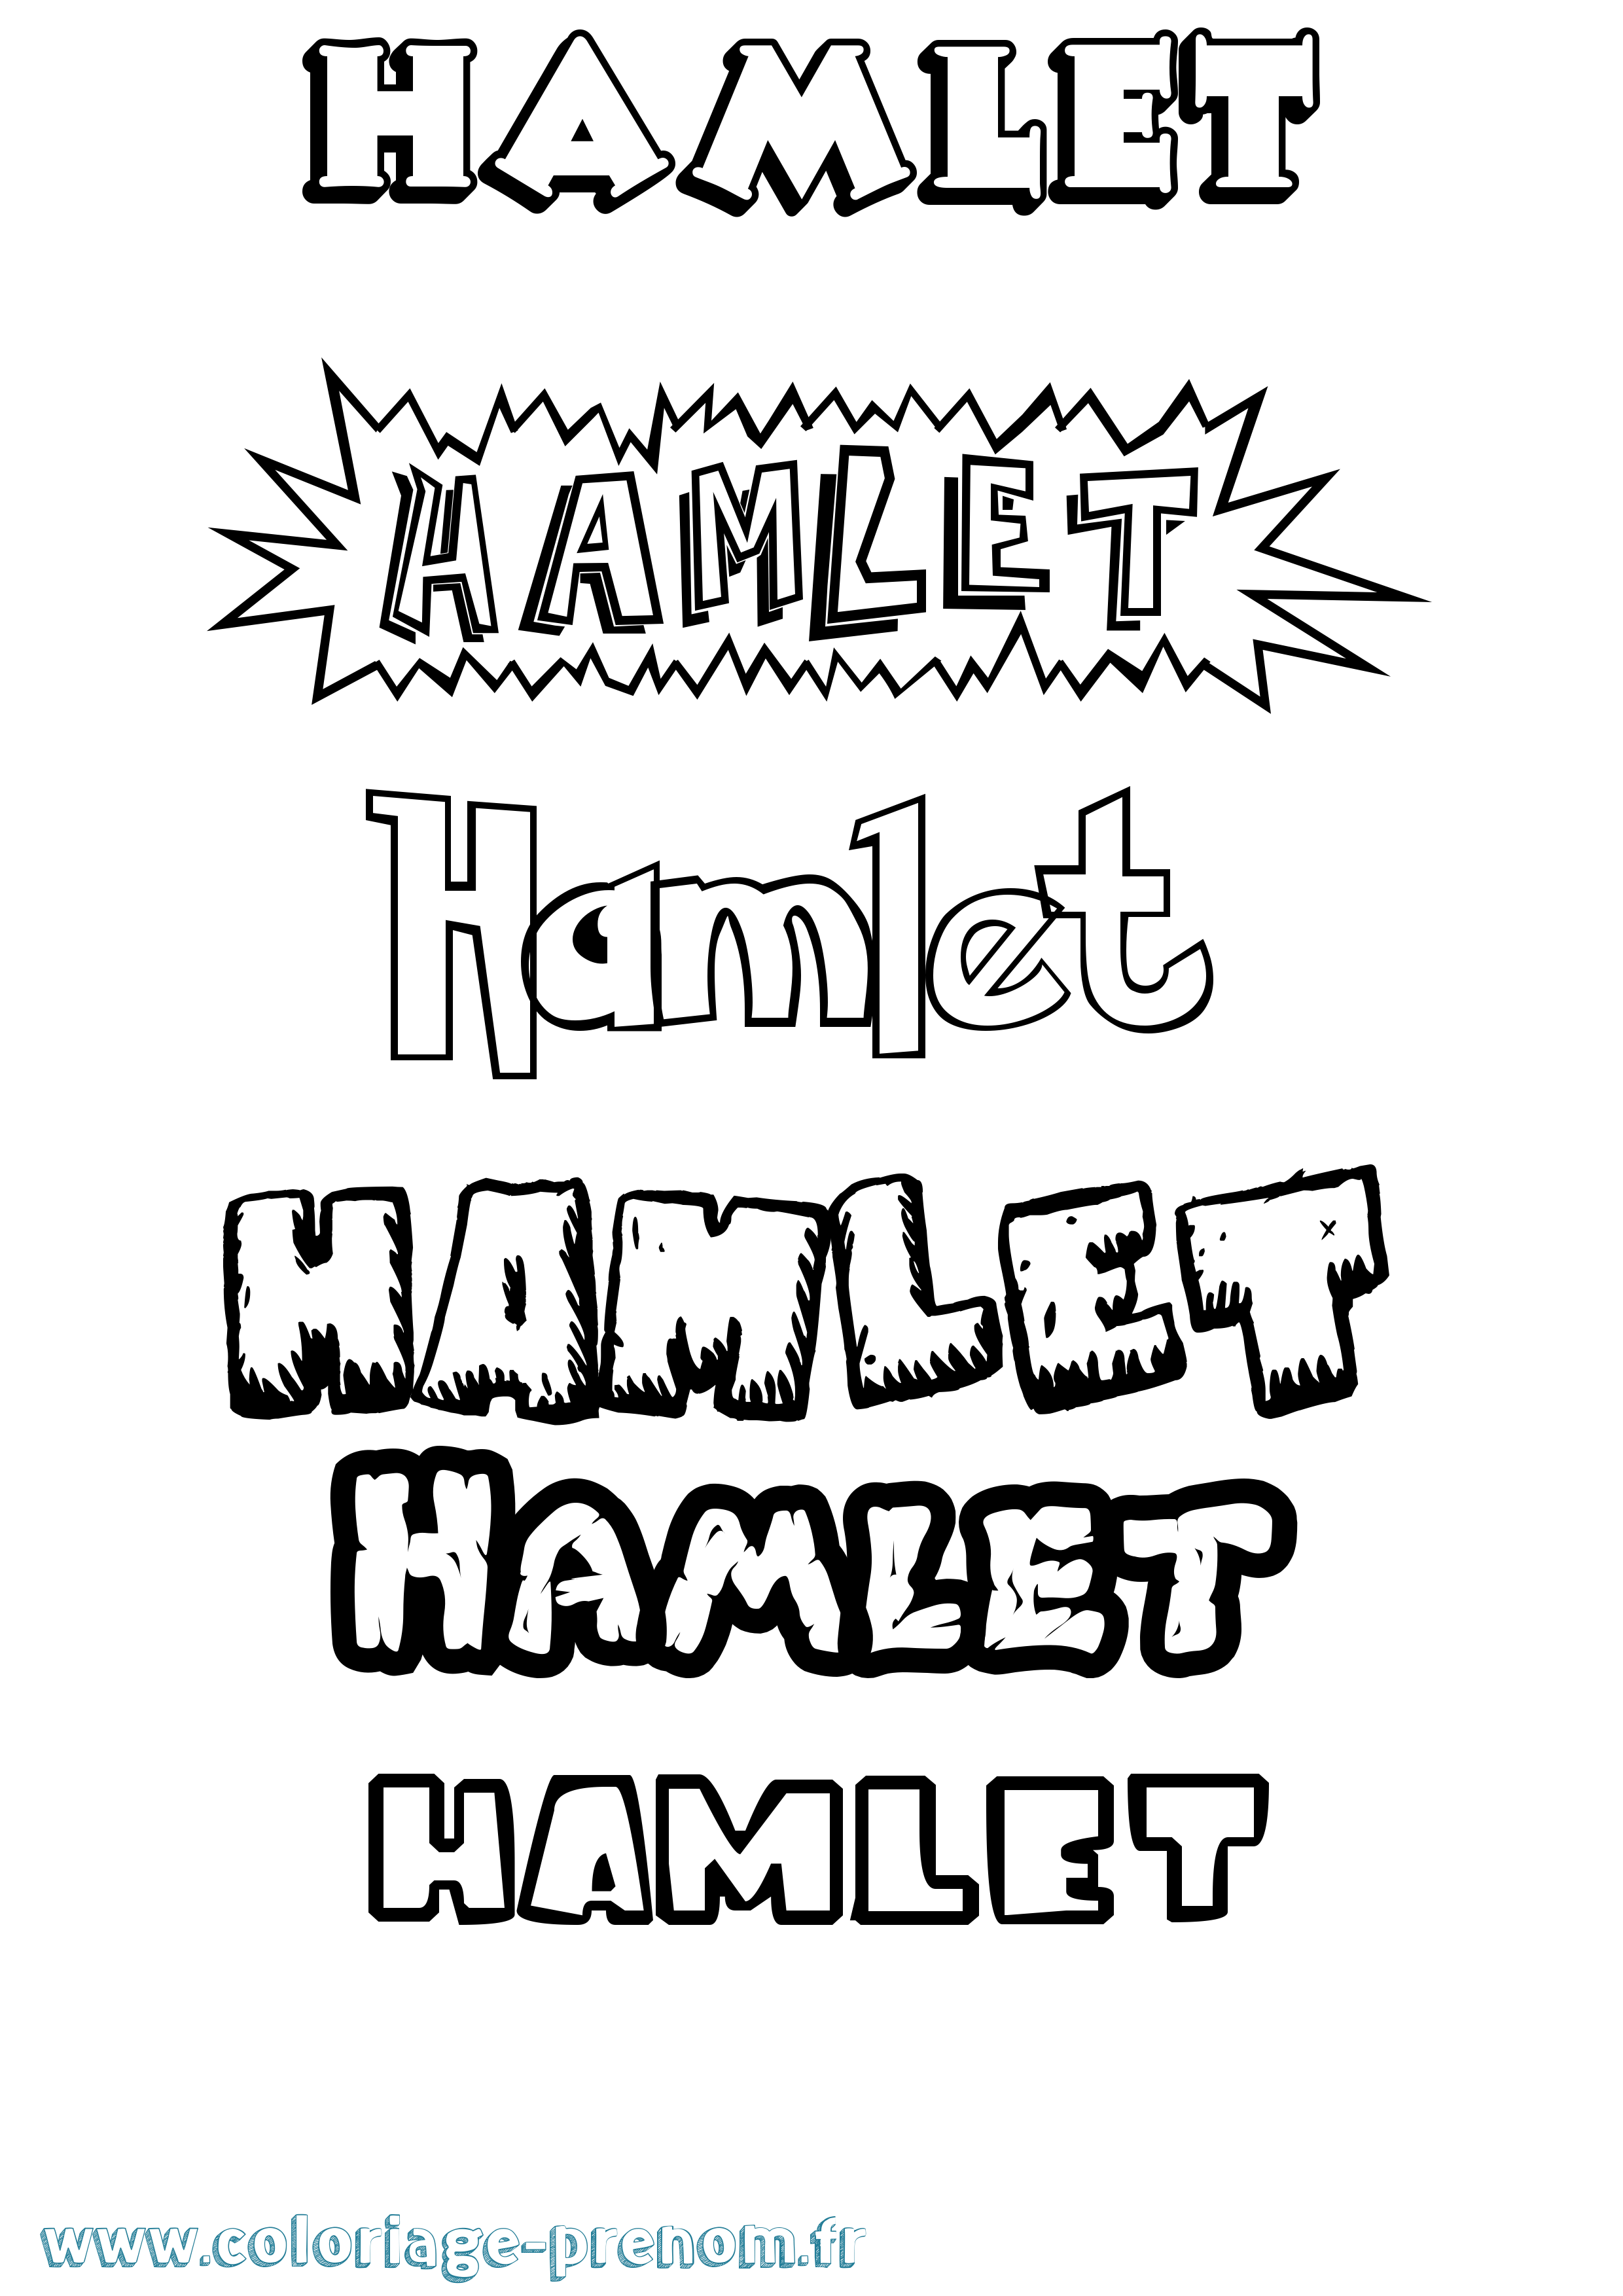 Coloriage prénom Hamlet Dessin Animé